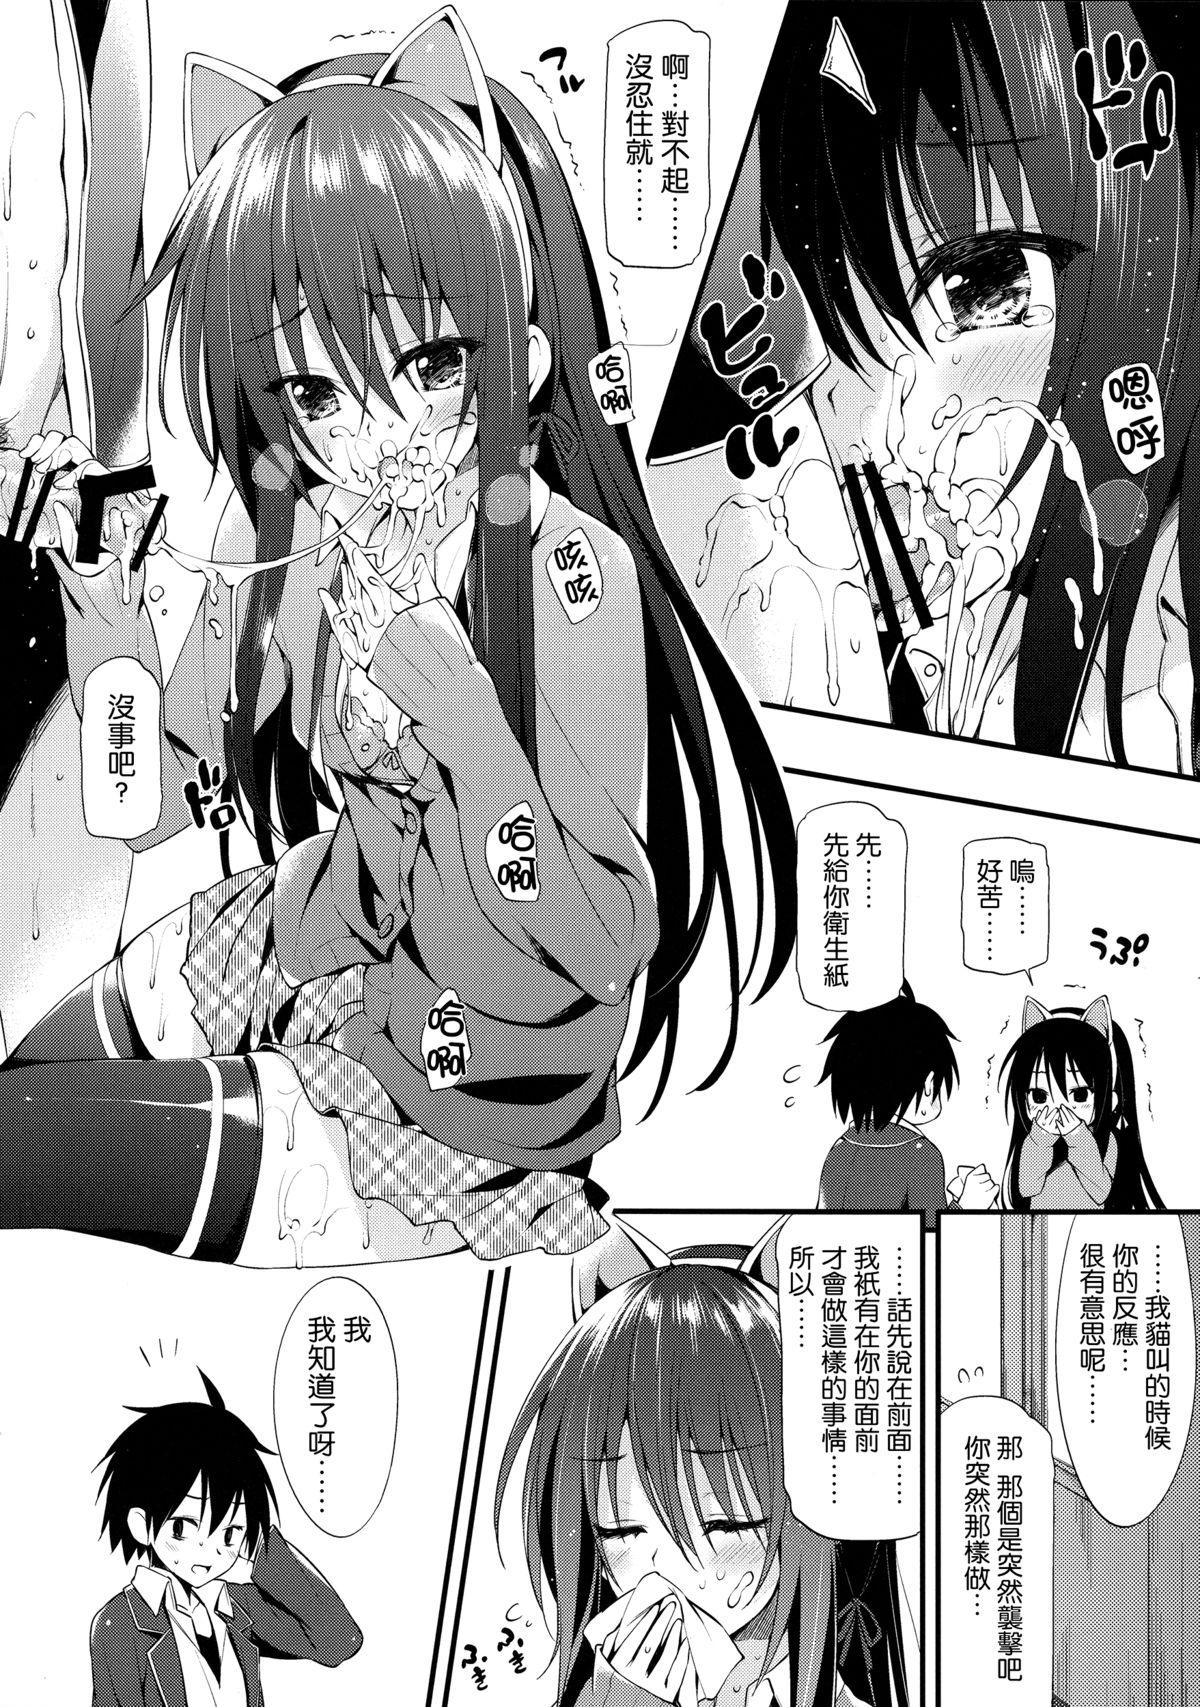 Pay Yukinon Gentei - Yahari ore no seishun love come wa machigatteiru 4some - Page 7